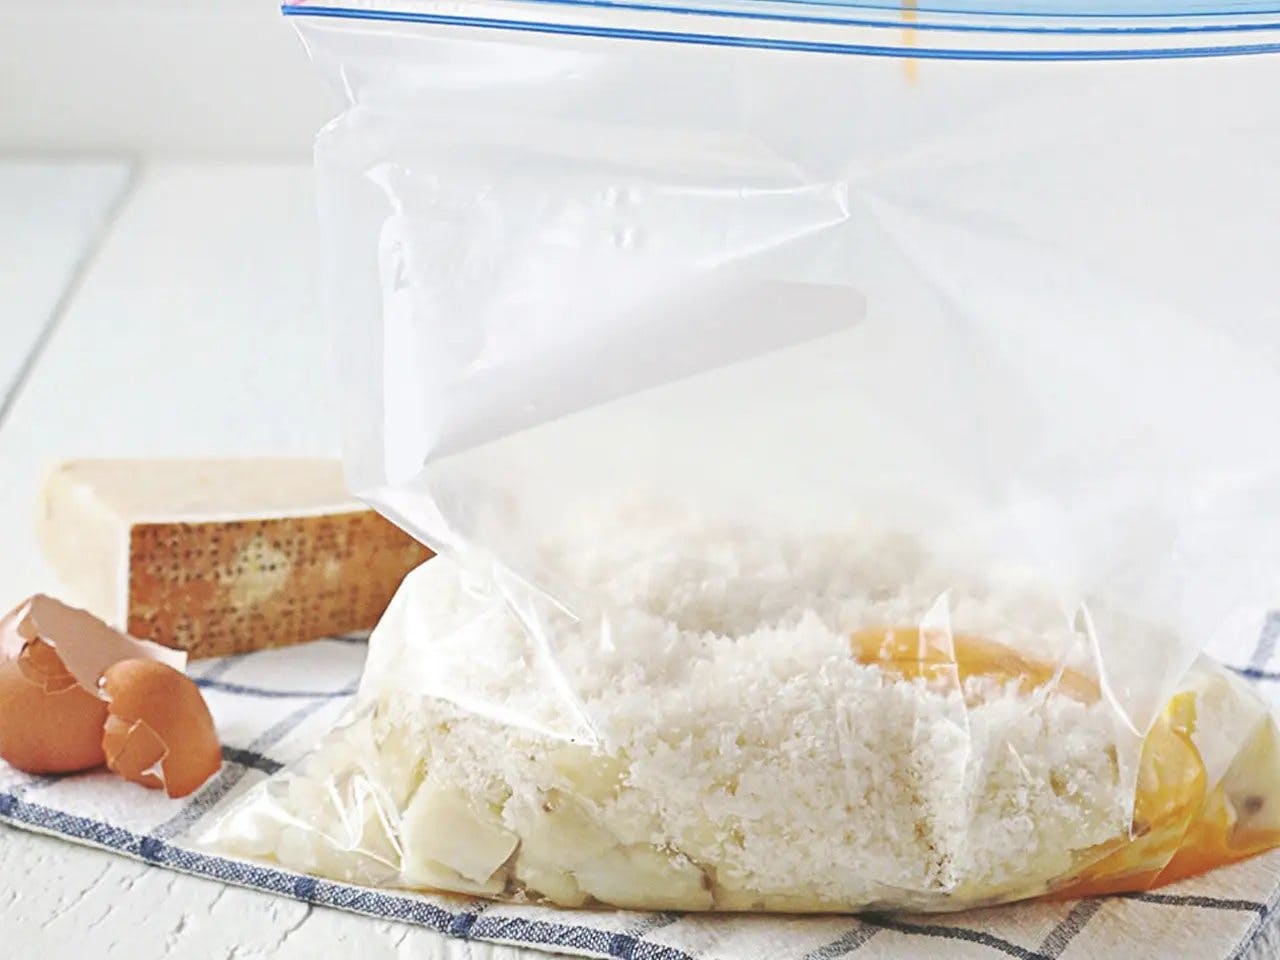 Yemas de huevo vertidas en una bolsa Ziploc con papas, harina, queso y sal